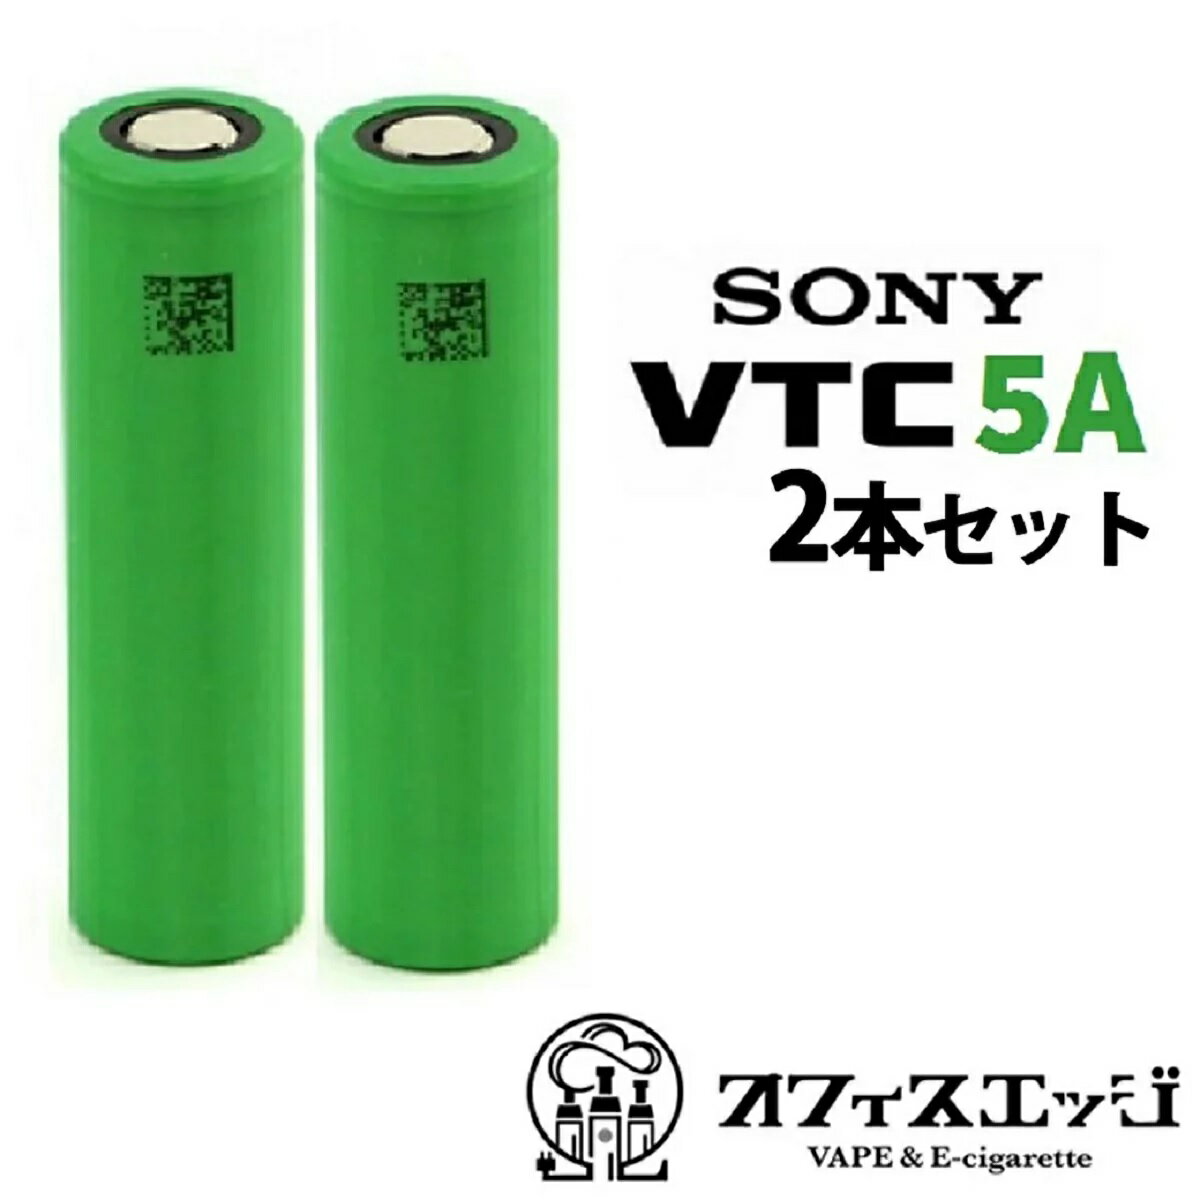 スーパーゲリラ【2本セット】VTC5A 2600mAh 30A MURATA 村田製作所 18650フラットトップ バッテリー 電池 電子タバコ ベイプ vape vtc battery 電池 充電池 vtc5a D-36